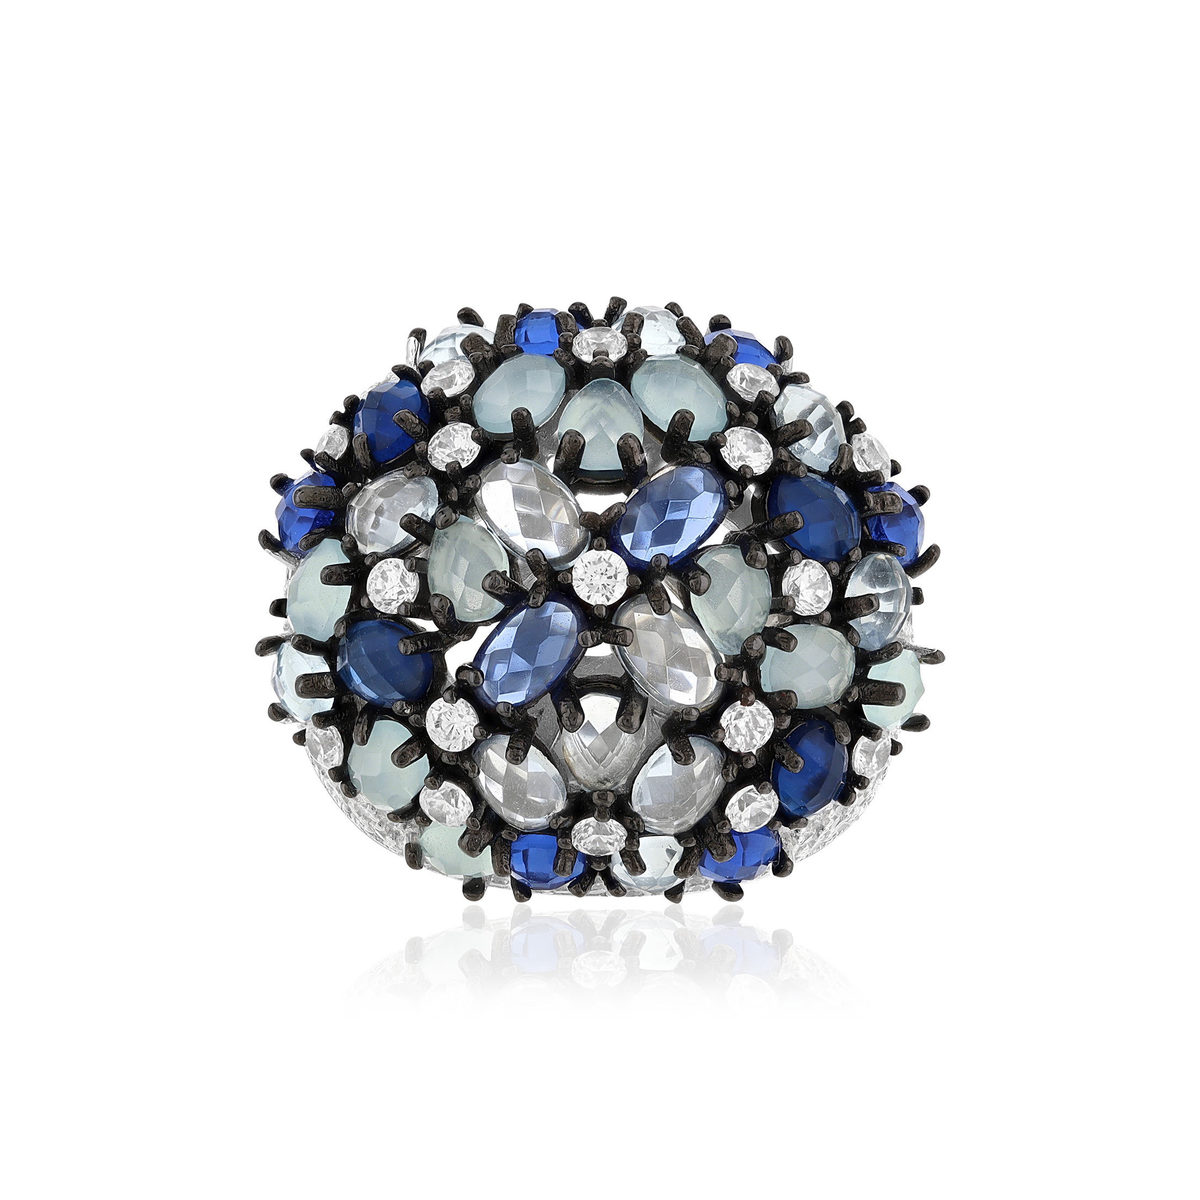 Bague argent 925 et ruthénium noir, pierres imitations bleues zirconias - vue 3